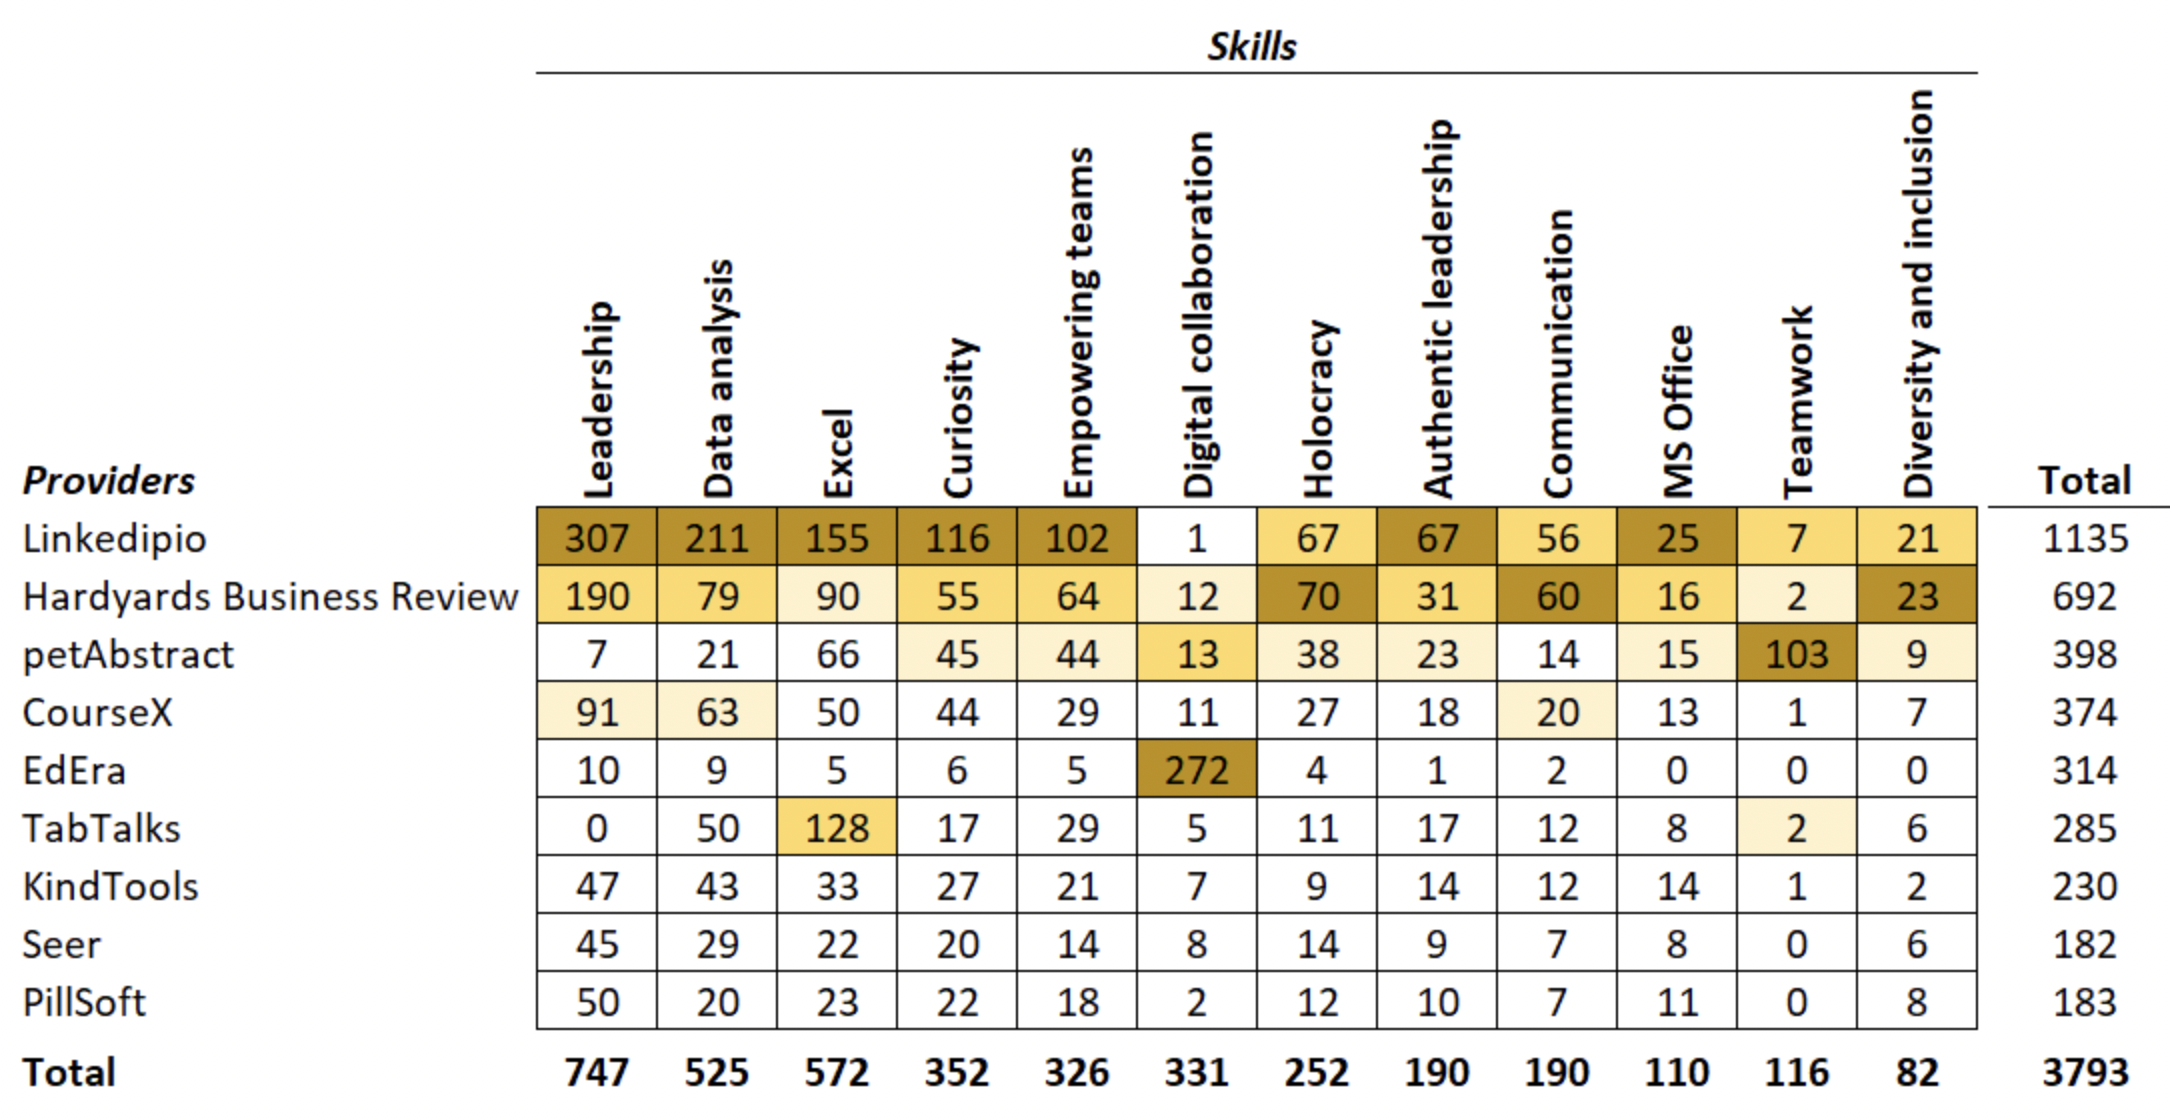 providers/skills table